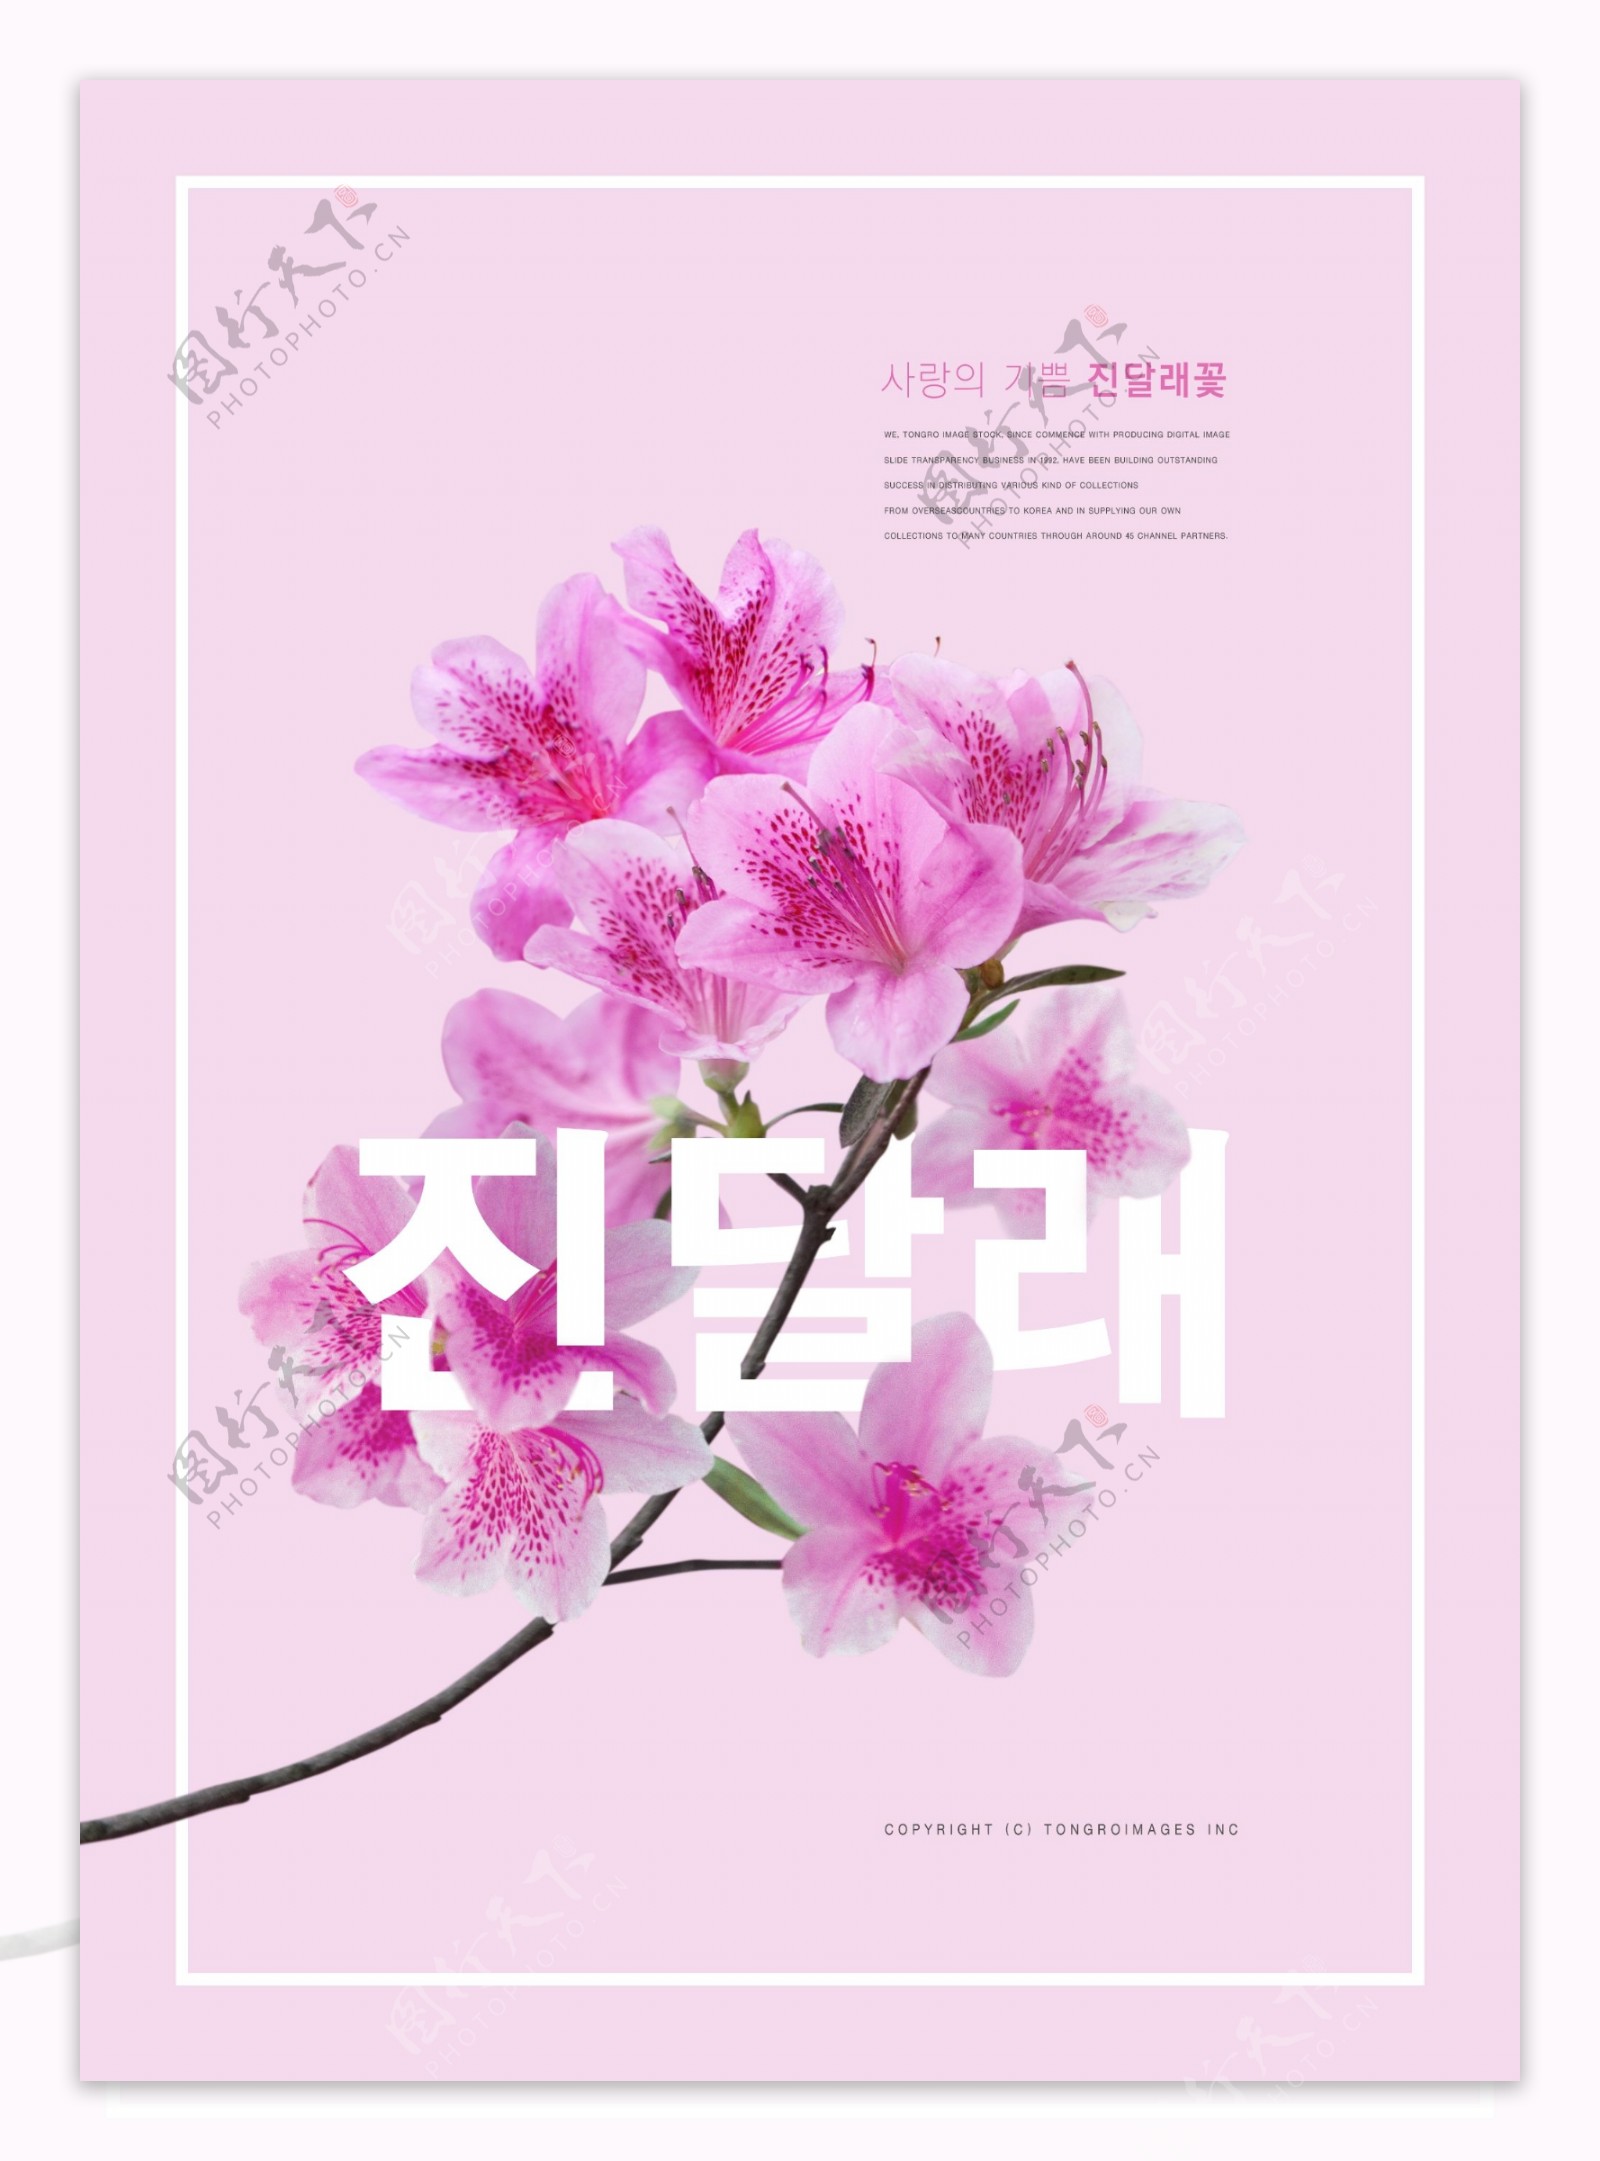 精美韩系粉色百合花促销海报设计